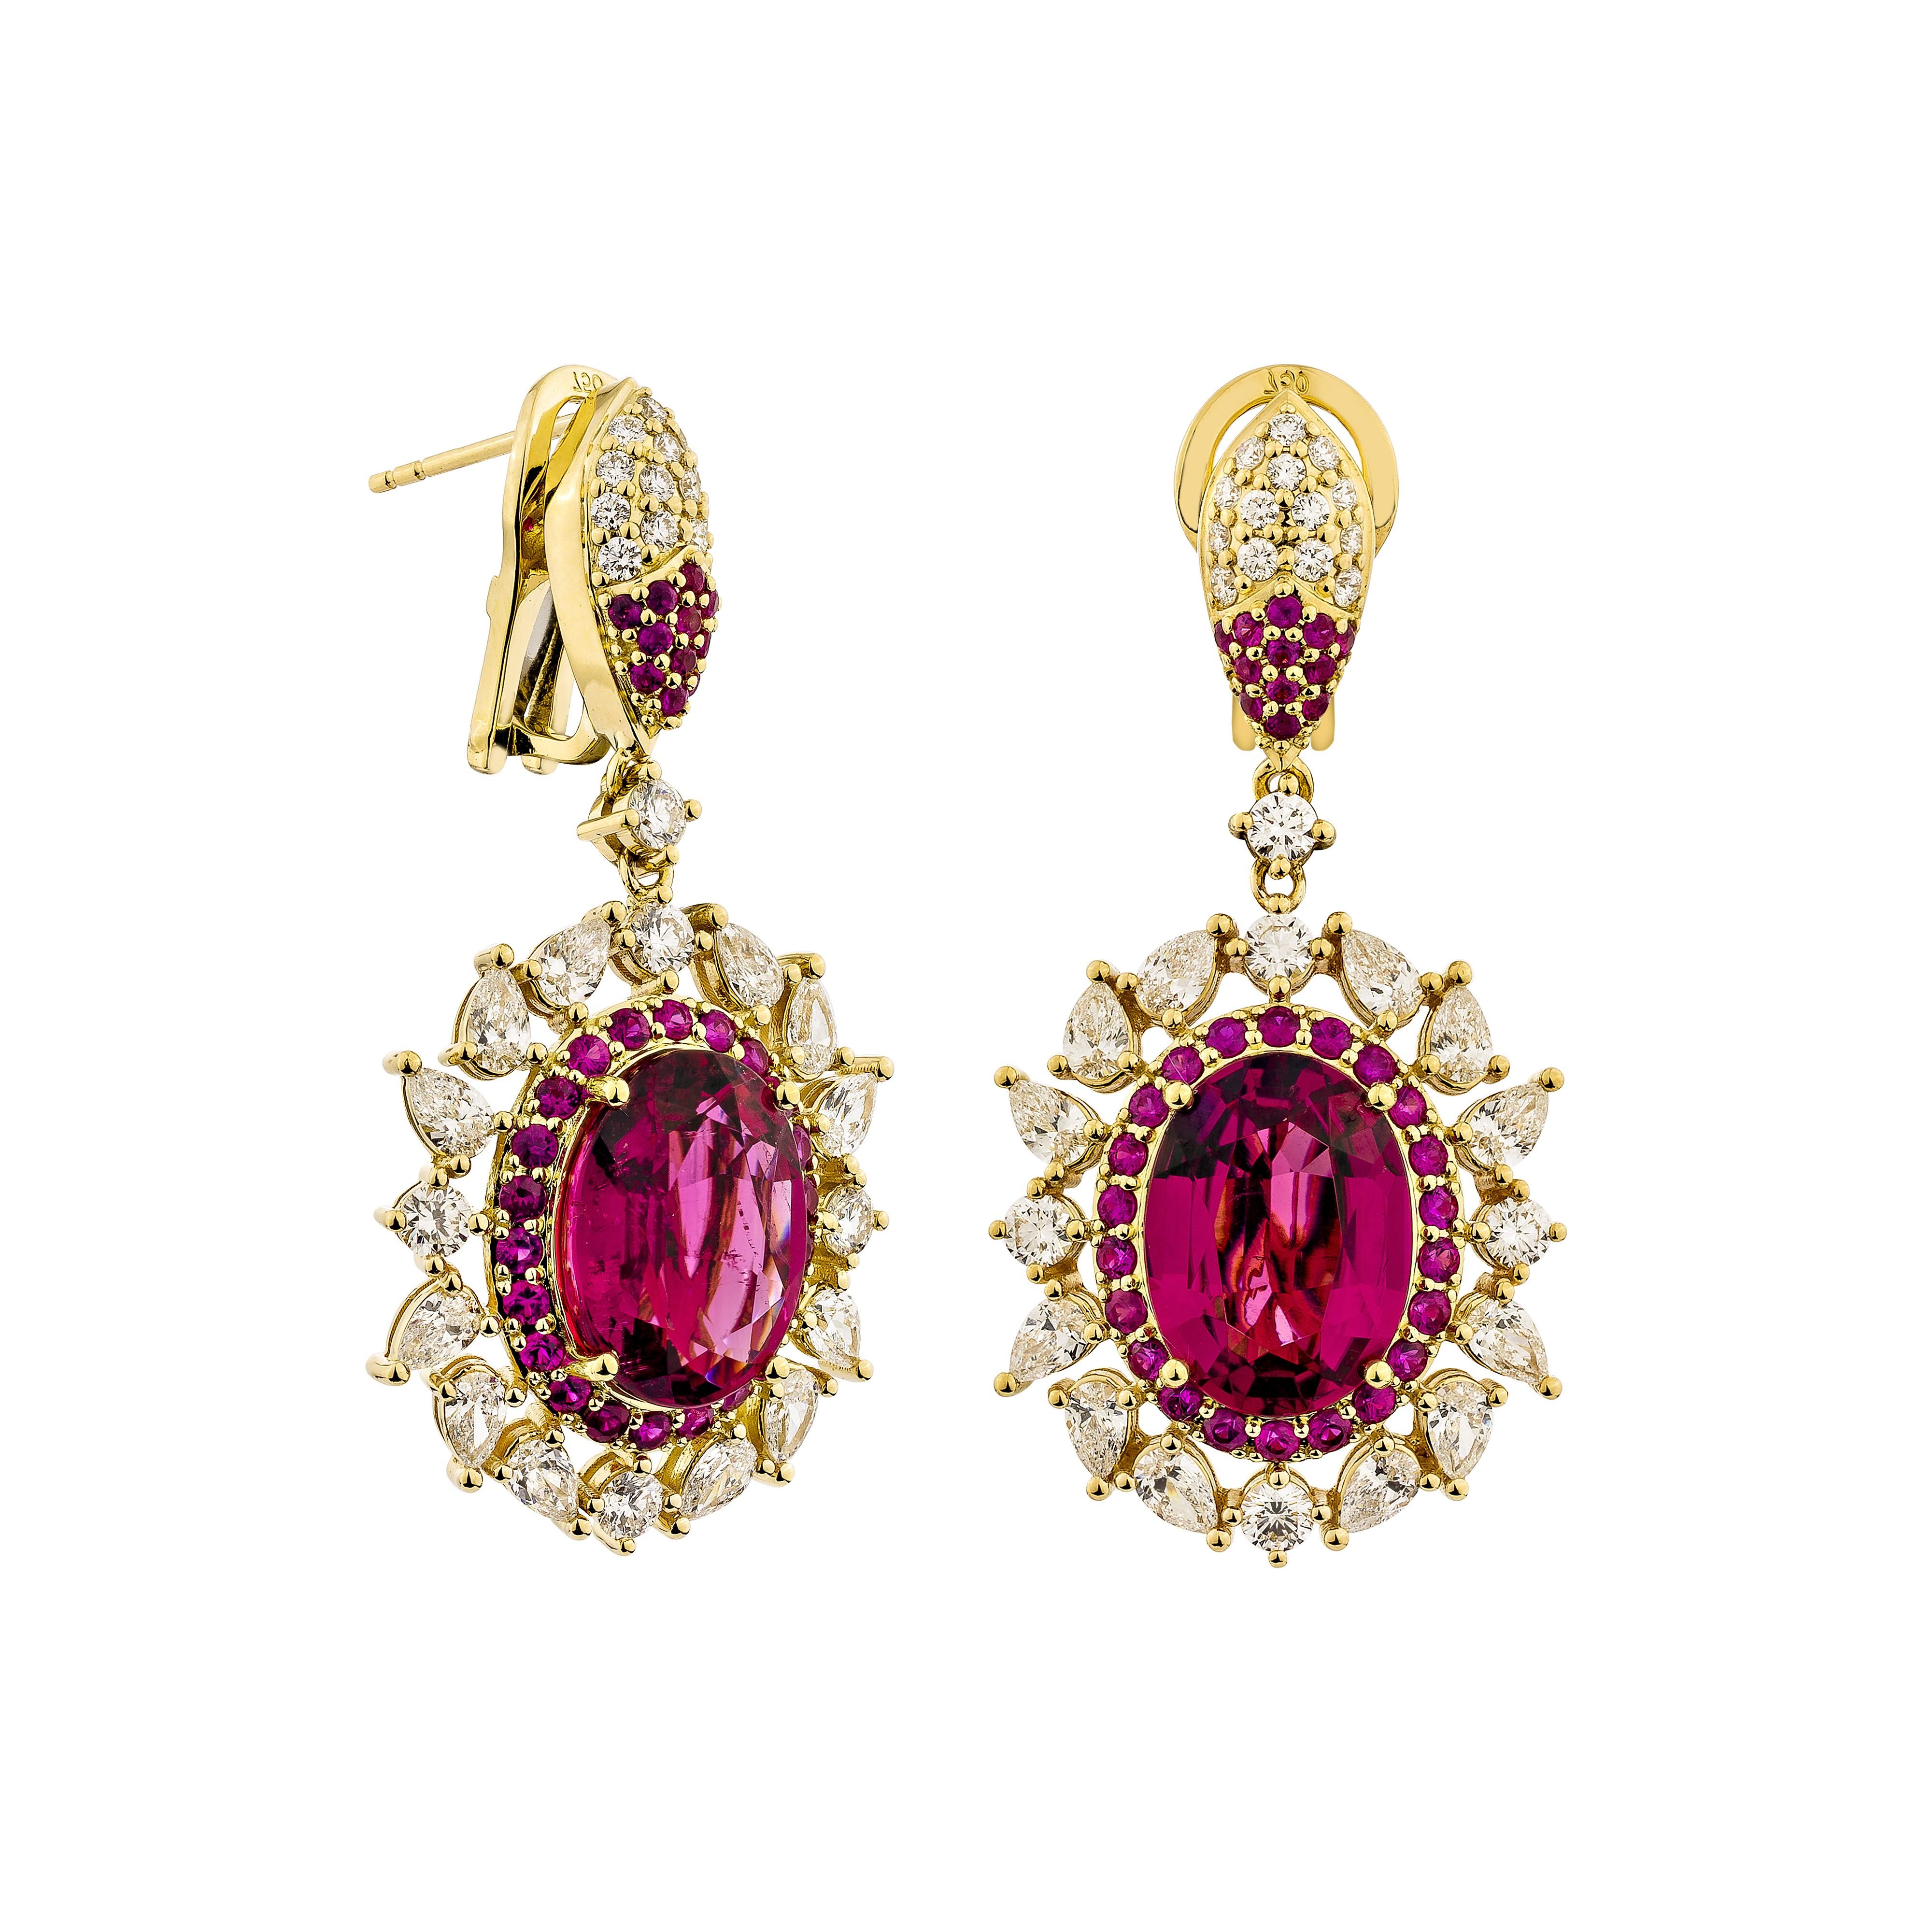 Sunita Nahata präsentiert ein exquisites diamantbesetztes Rubellit-Schmuckset, das Anmut und Eleganz ausstrahlt. Dieses exquisite Set aus 18 Karat Gelbgold ist ideal für jeden besonderen Anlass, denn es verbindet traditionelle Eleganz mit modernem